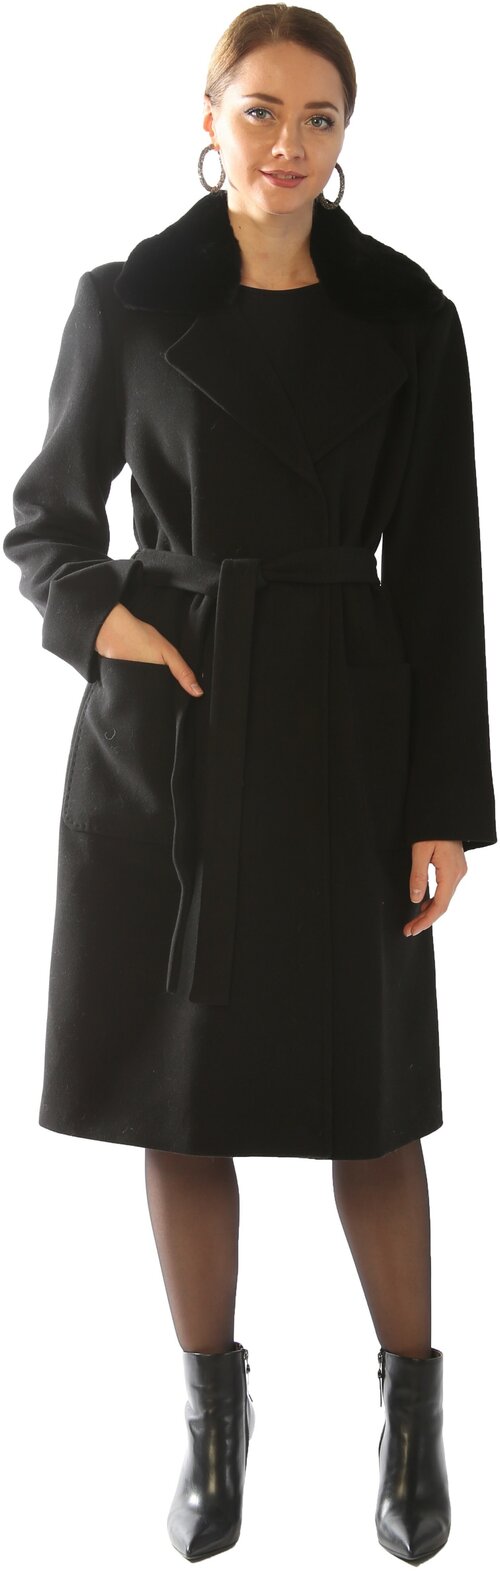 Пальто-пиджак  демисезонное, демисезон/зима, силуэт прямой, удлиненное, размер 54/170, черный